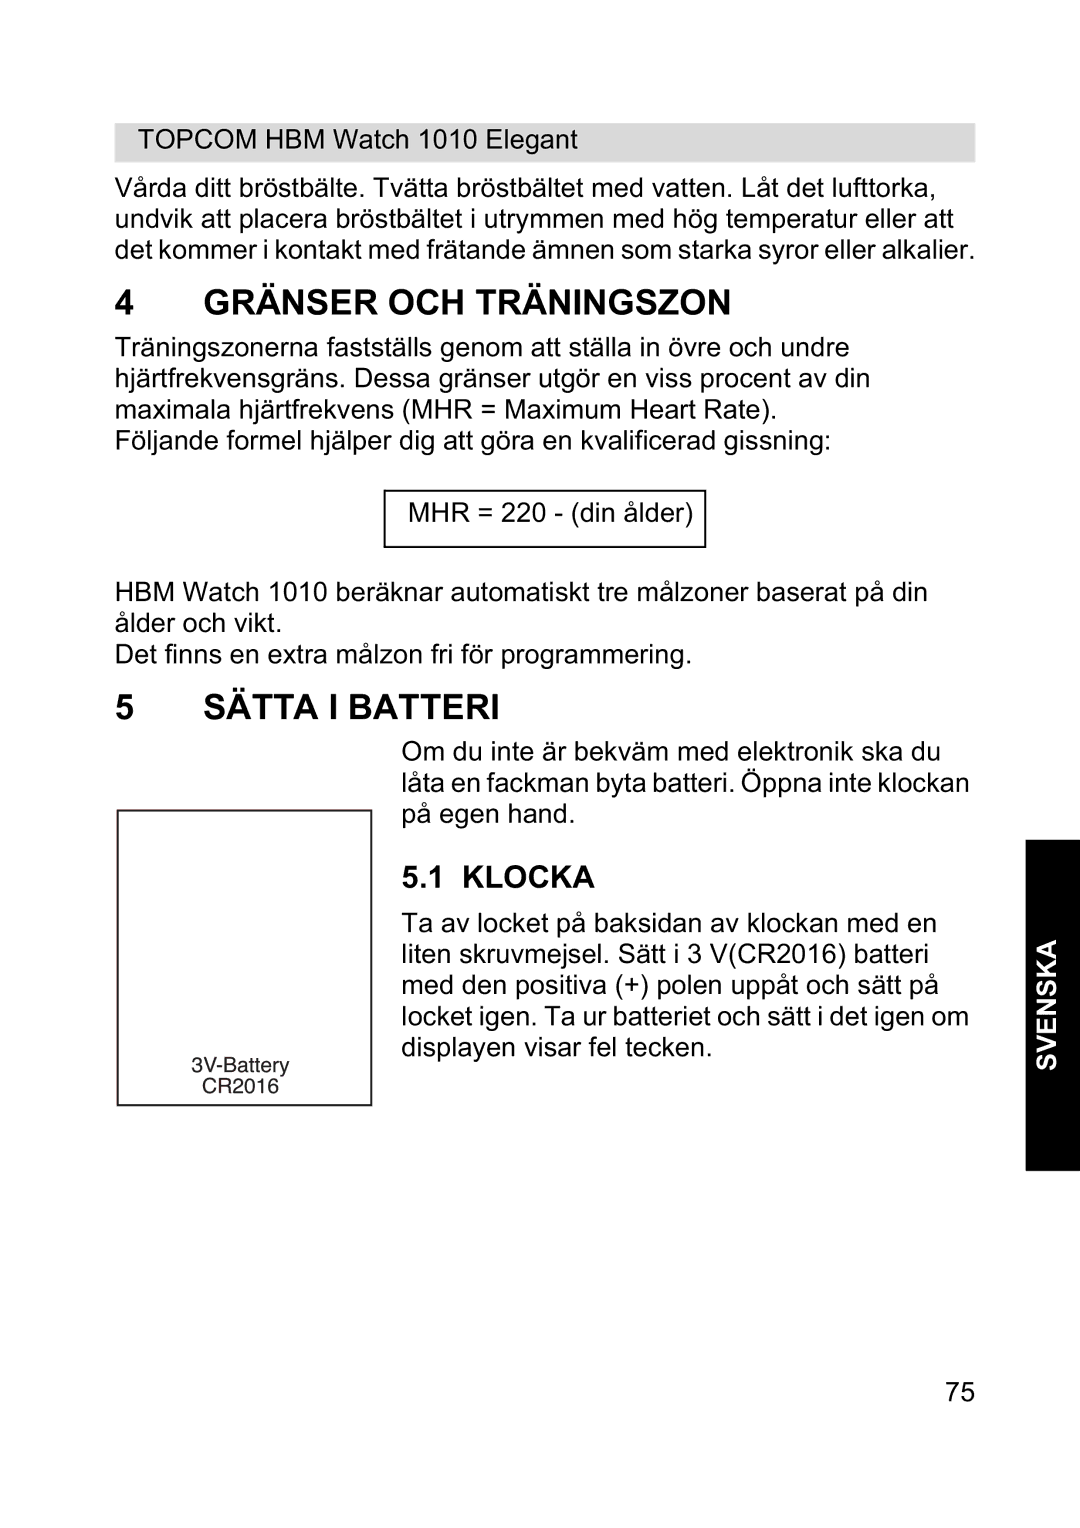 Topcom 1010 Elelgant manual Gränser OCH Träningszon, Sätta I Batteri, Klocka 